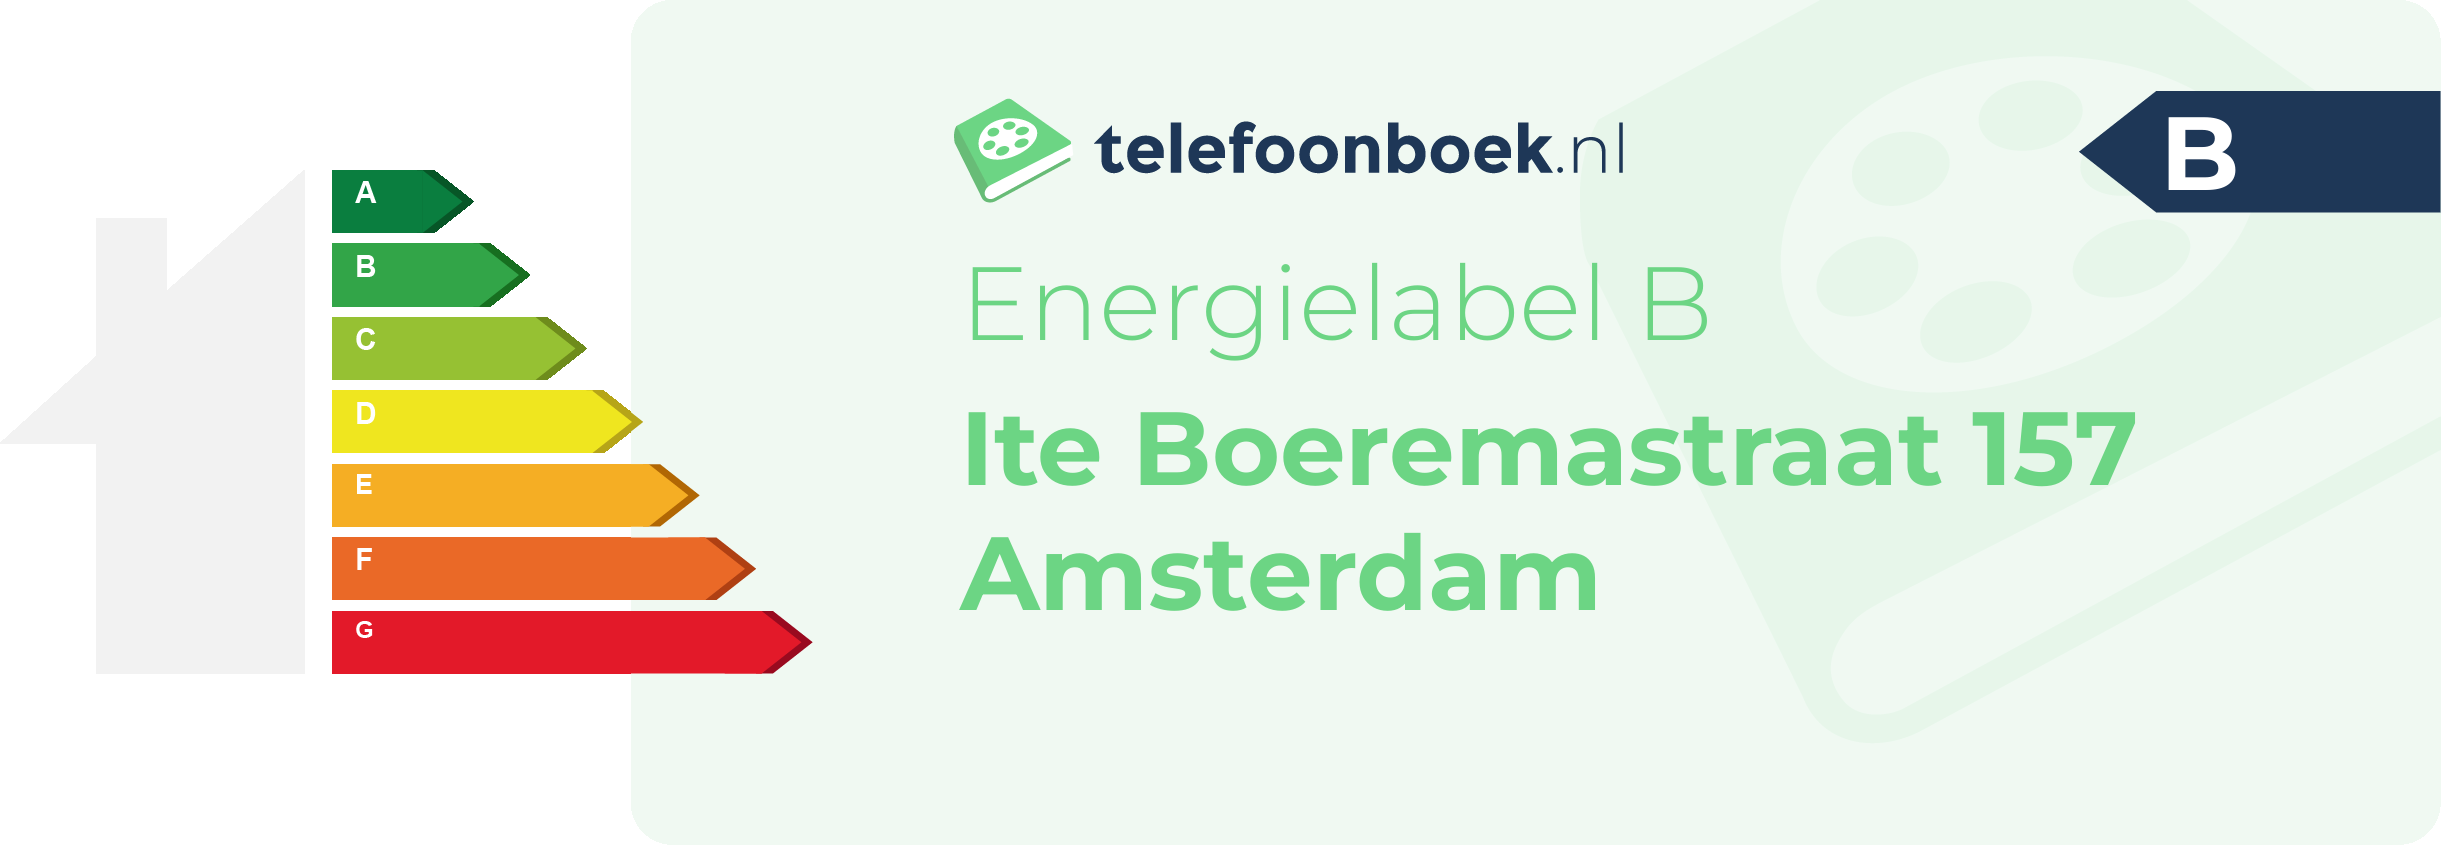 Energielabel Ite Boeremastraat 157 Amsterdam